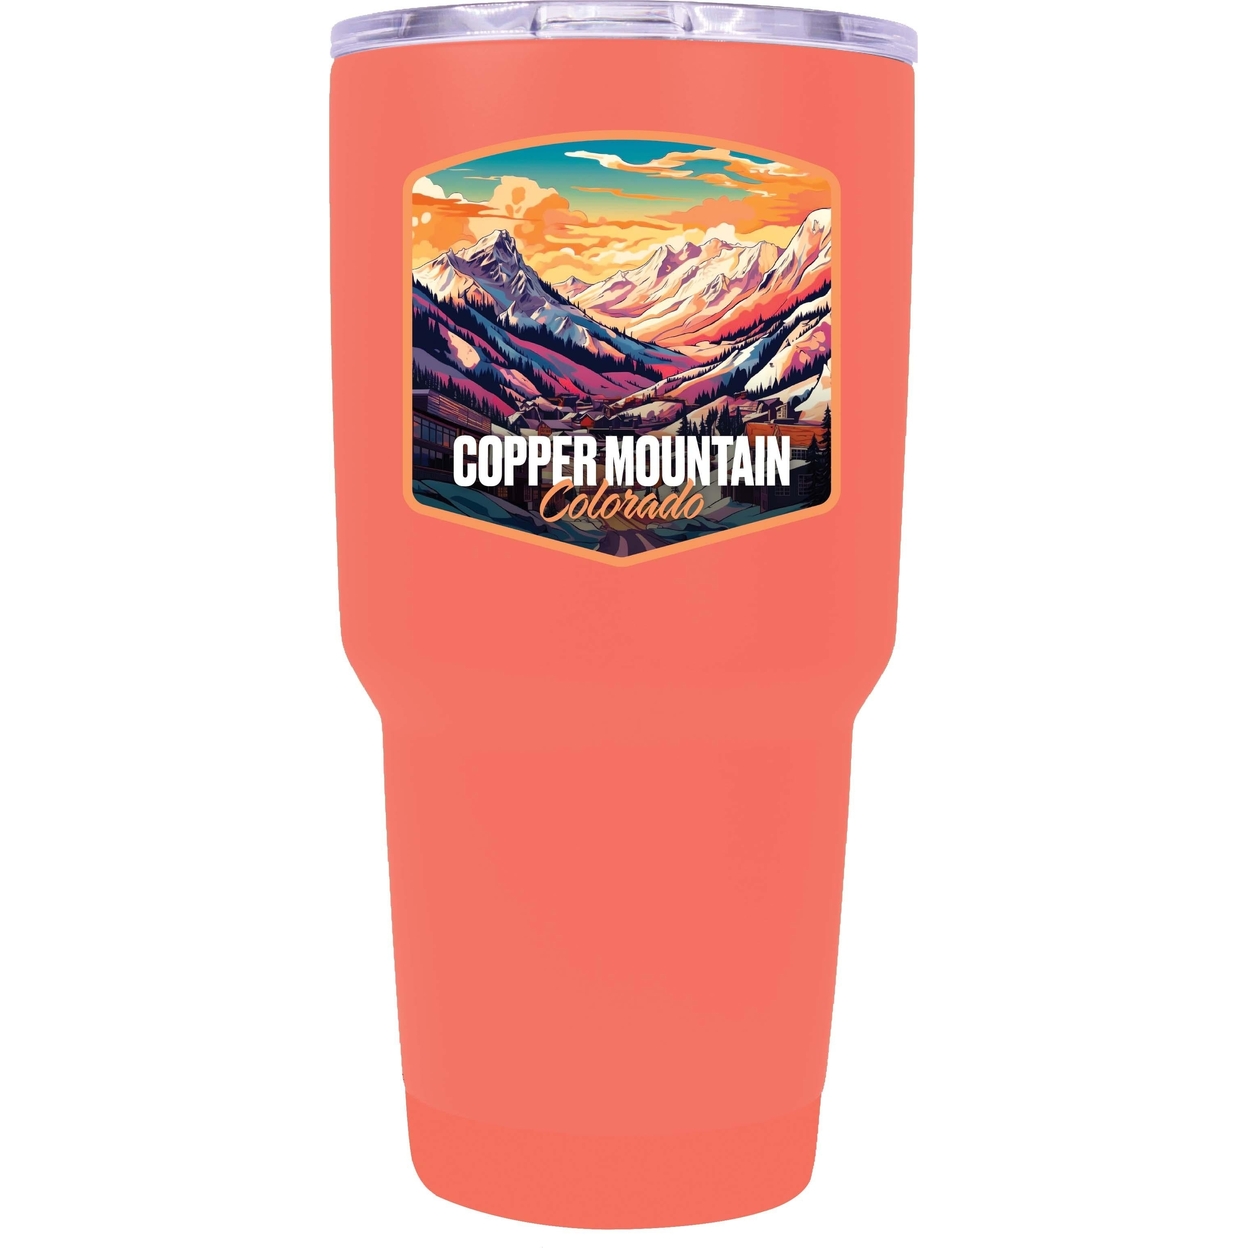 Copper Mountain A Souvenir 24 Oz Insulated Tumbler - Rose Gold,,Single